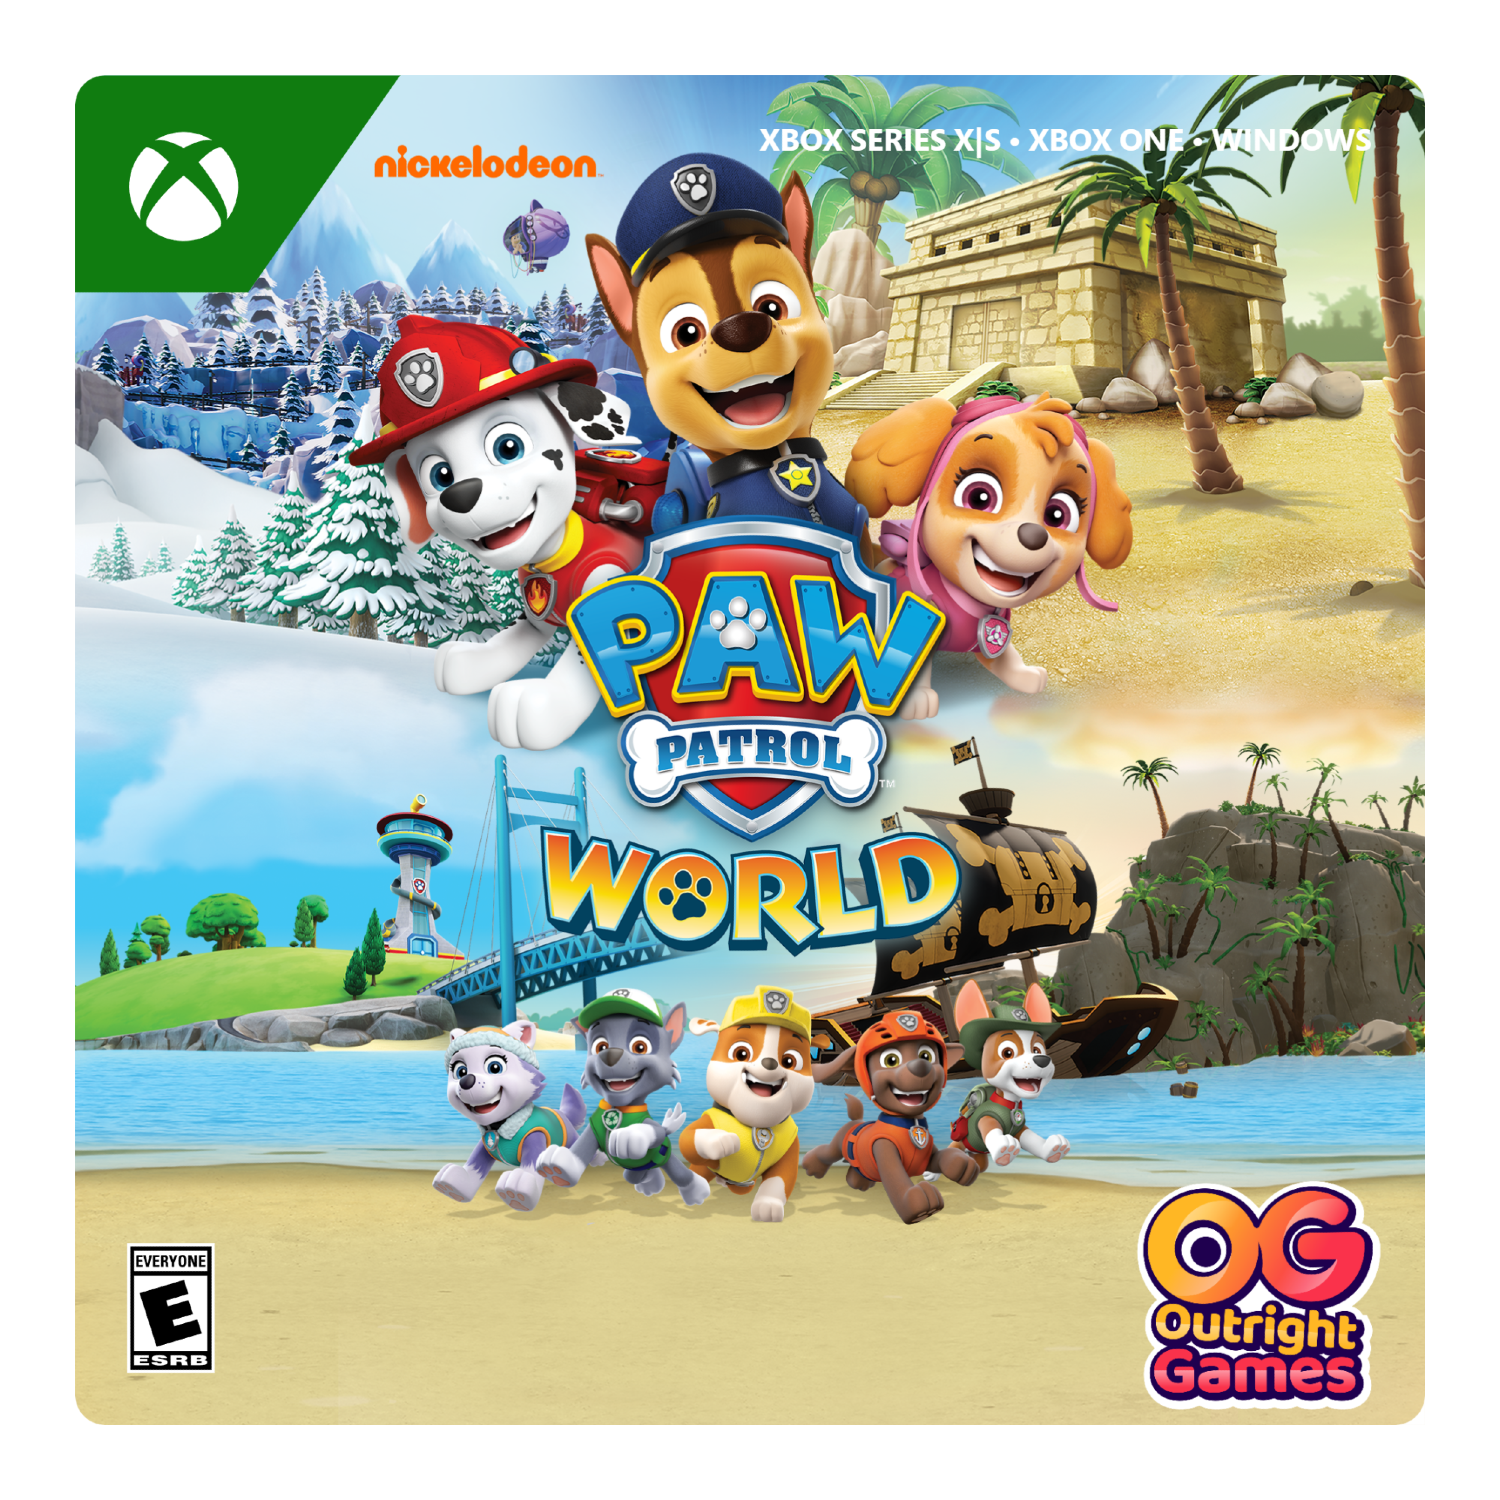 [Digital] Xbox Windows World Series Xbox One, Patrol Paw X|S, -